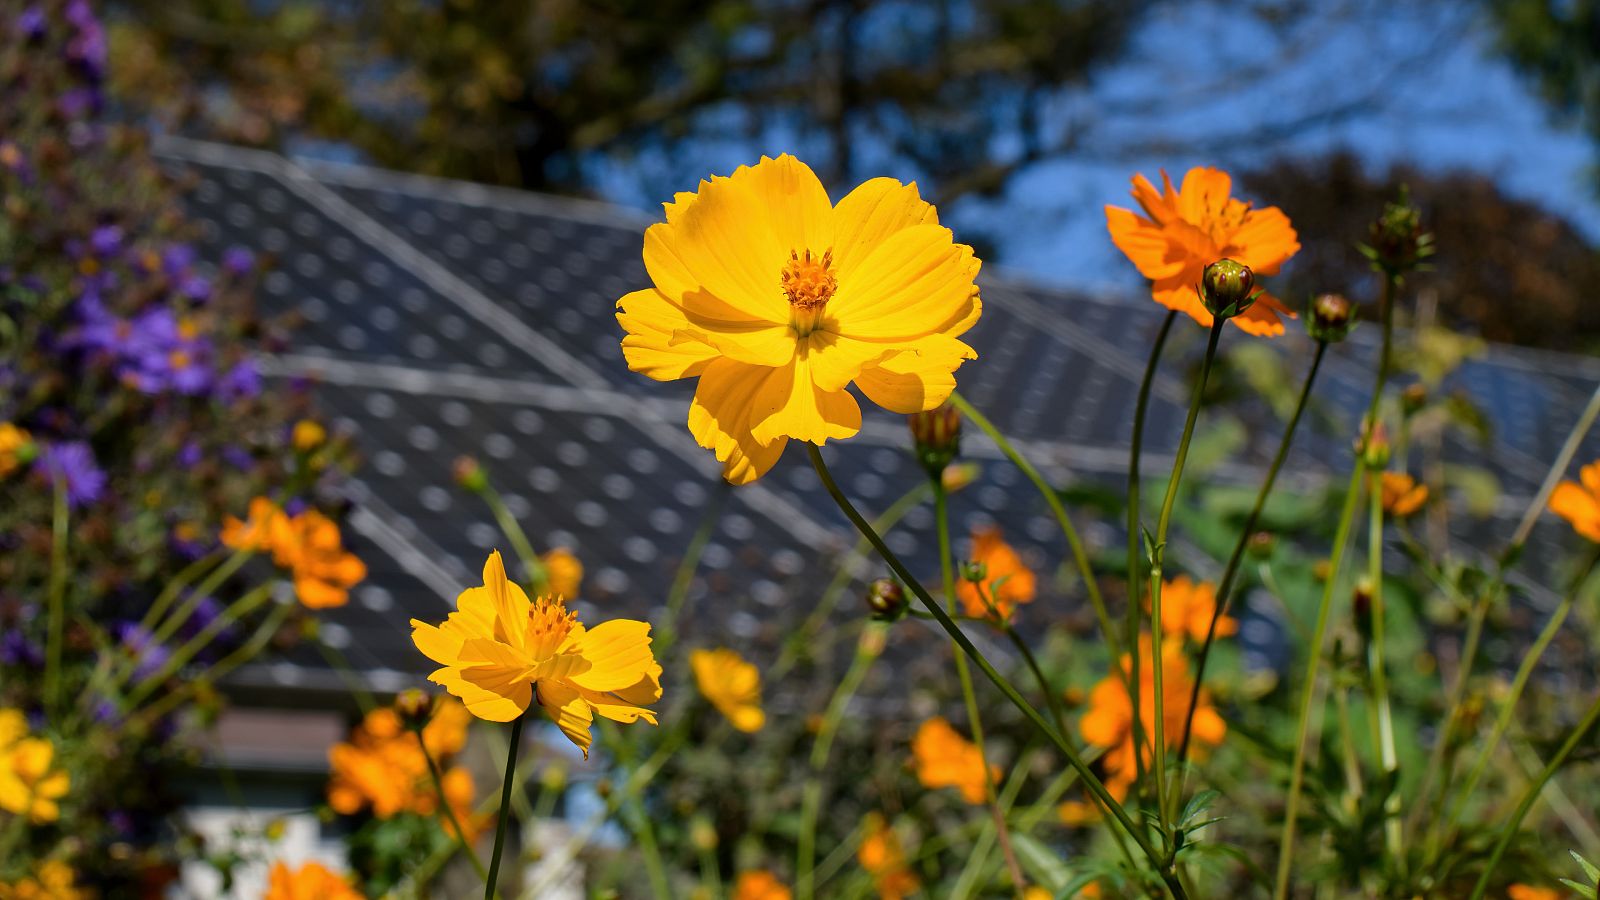 Apiario solar: un nuevo modelo agro voltaico en el que conviven panales de abejas y paneles